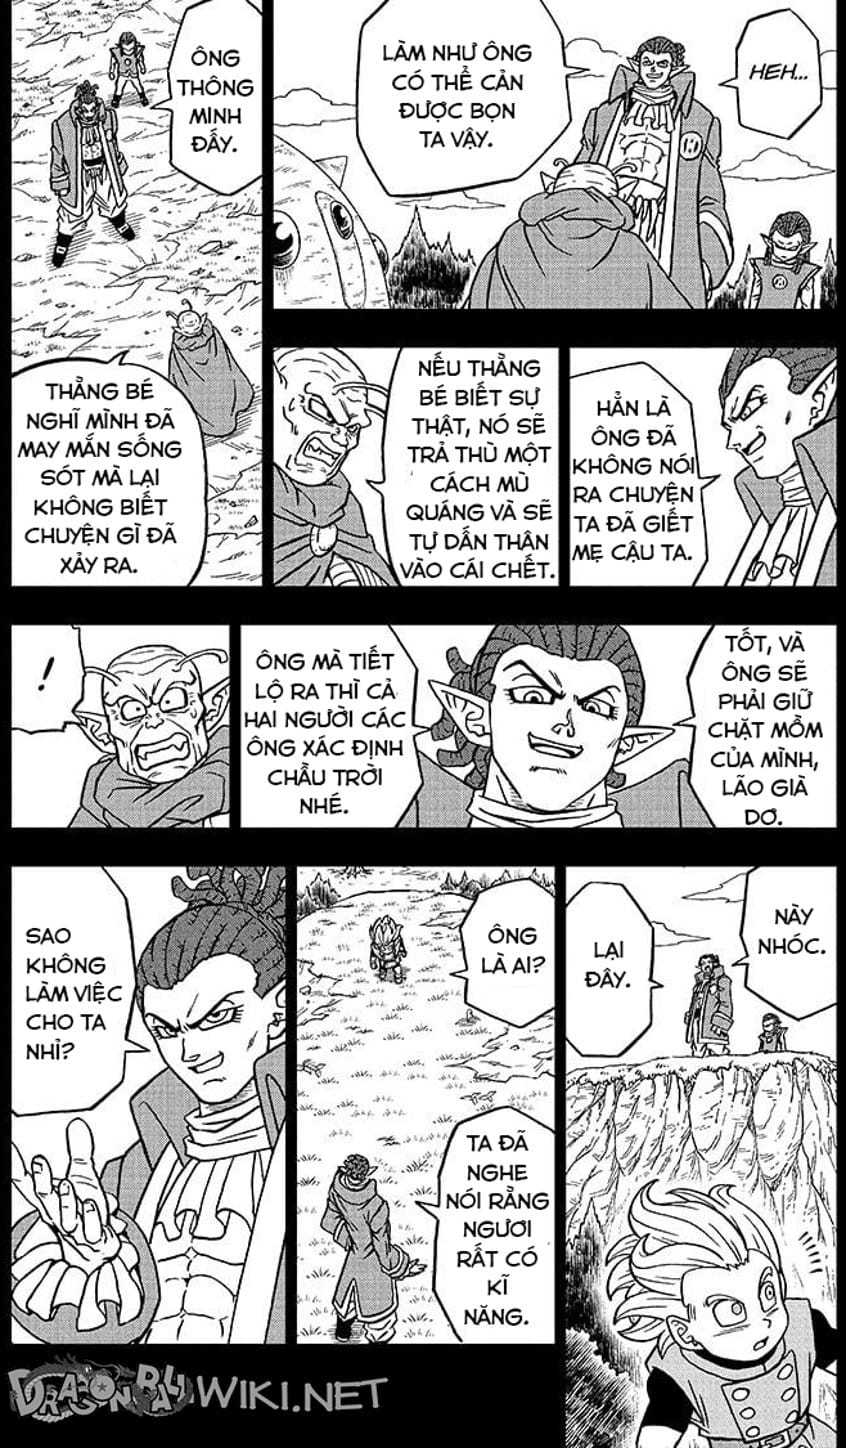 Truyện Tranh Truy Tìm Ngọc Rồng Siêu Cấp - Dragon Ball Super trang 3141